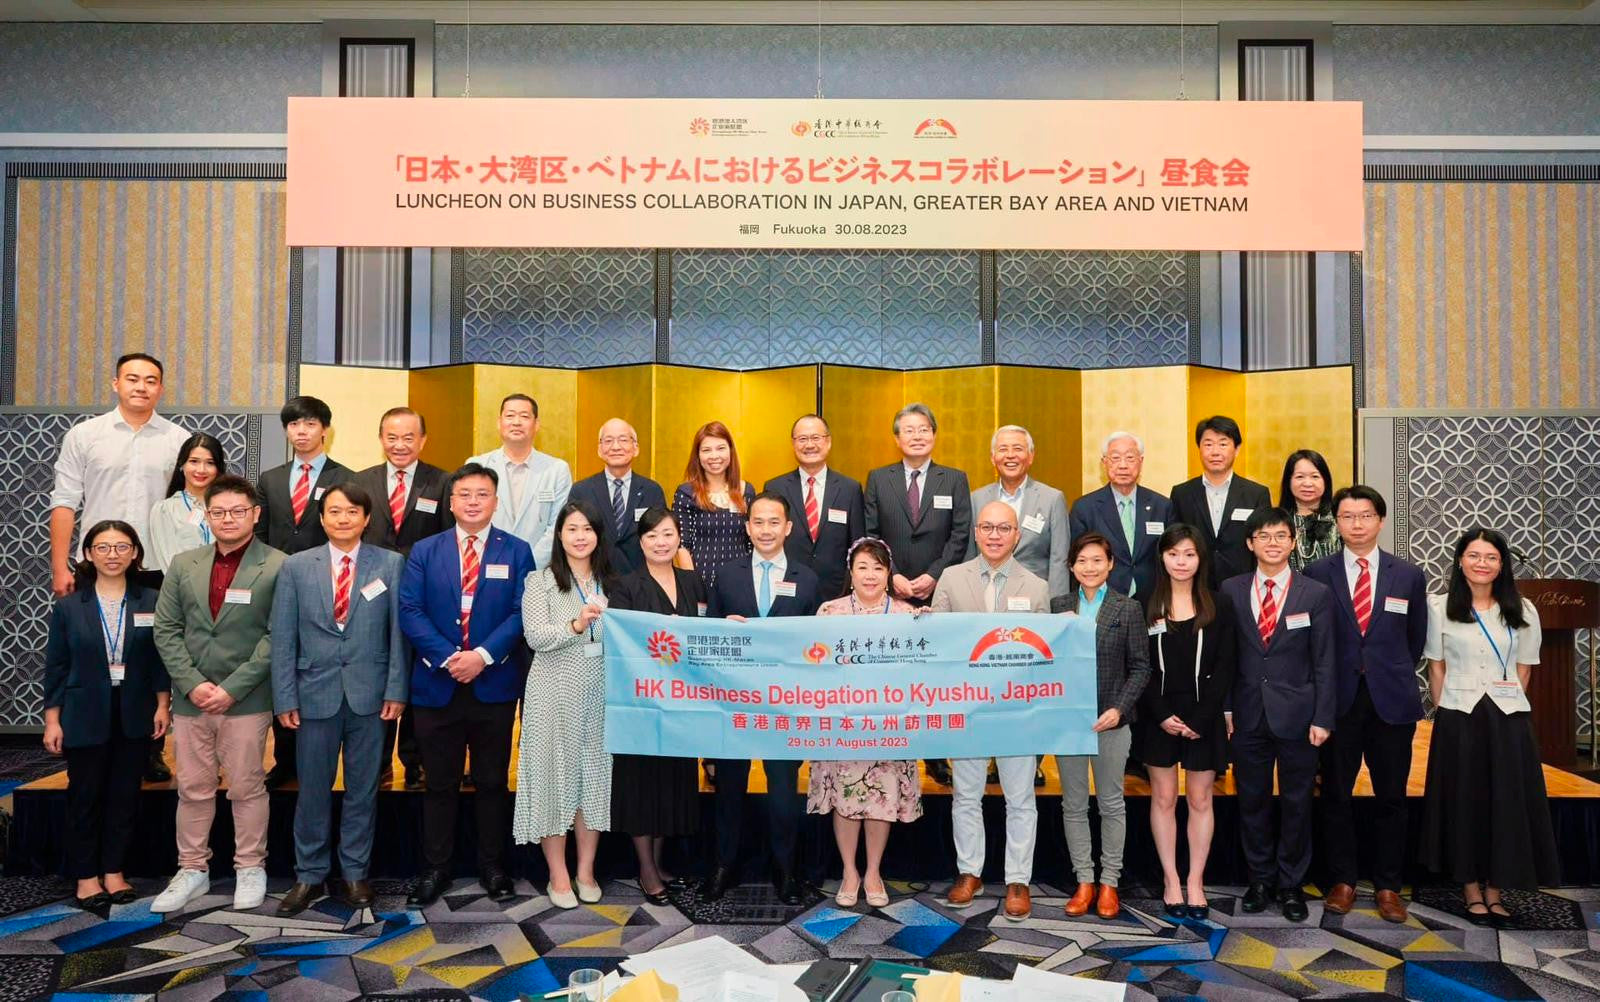 Le leader du commerce électronique de Hong Kong renforce les liens régionaux lors d'une visite historique à Kyushu